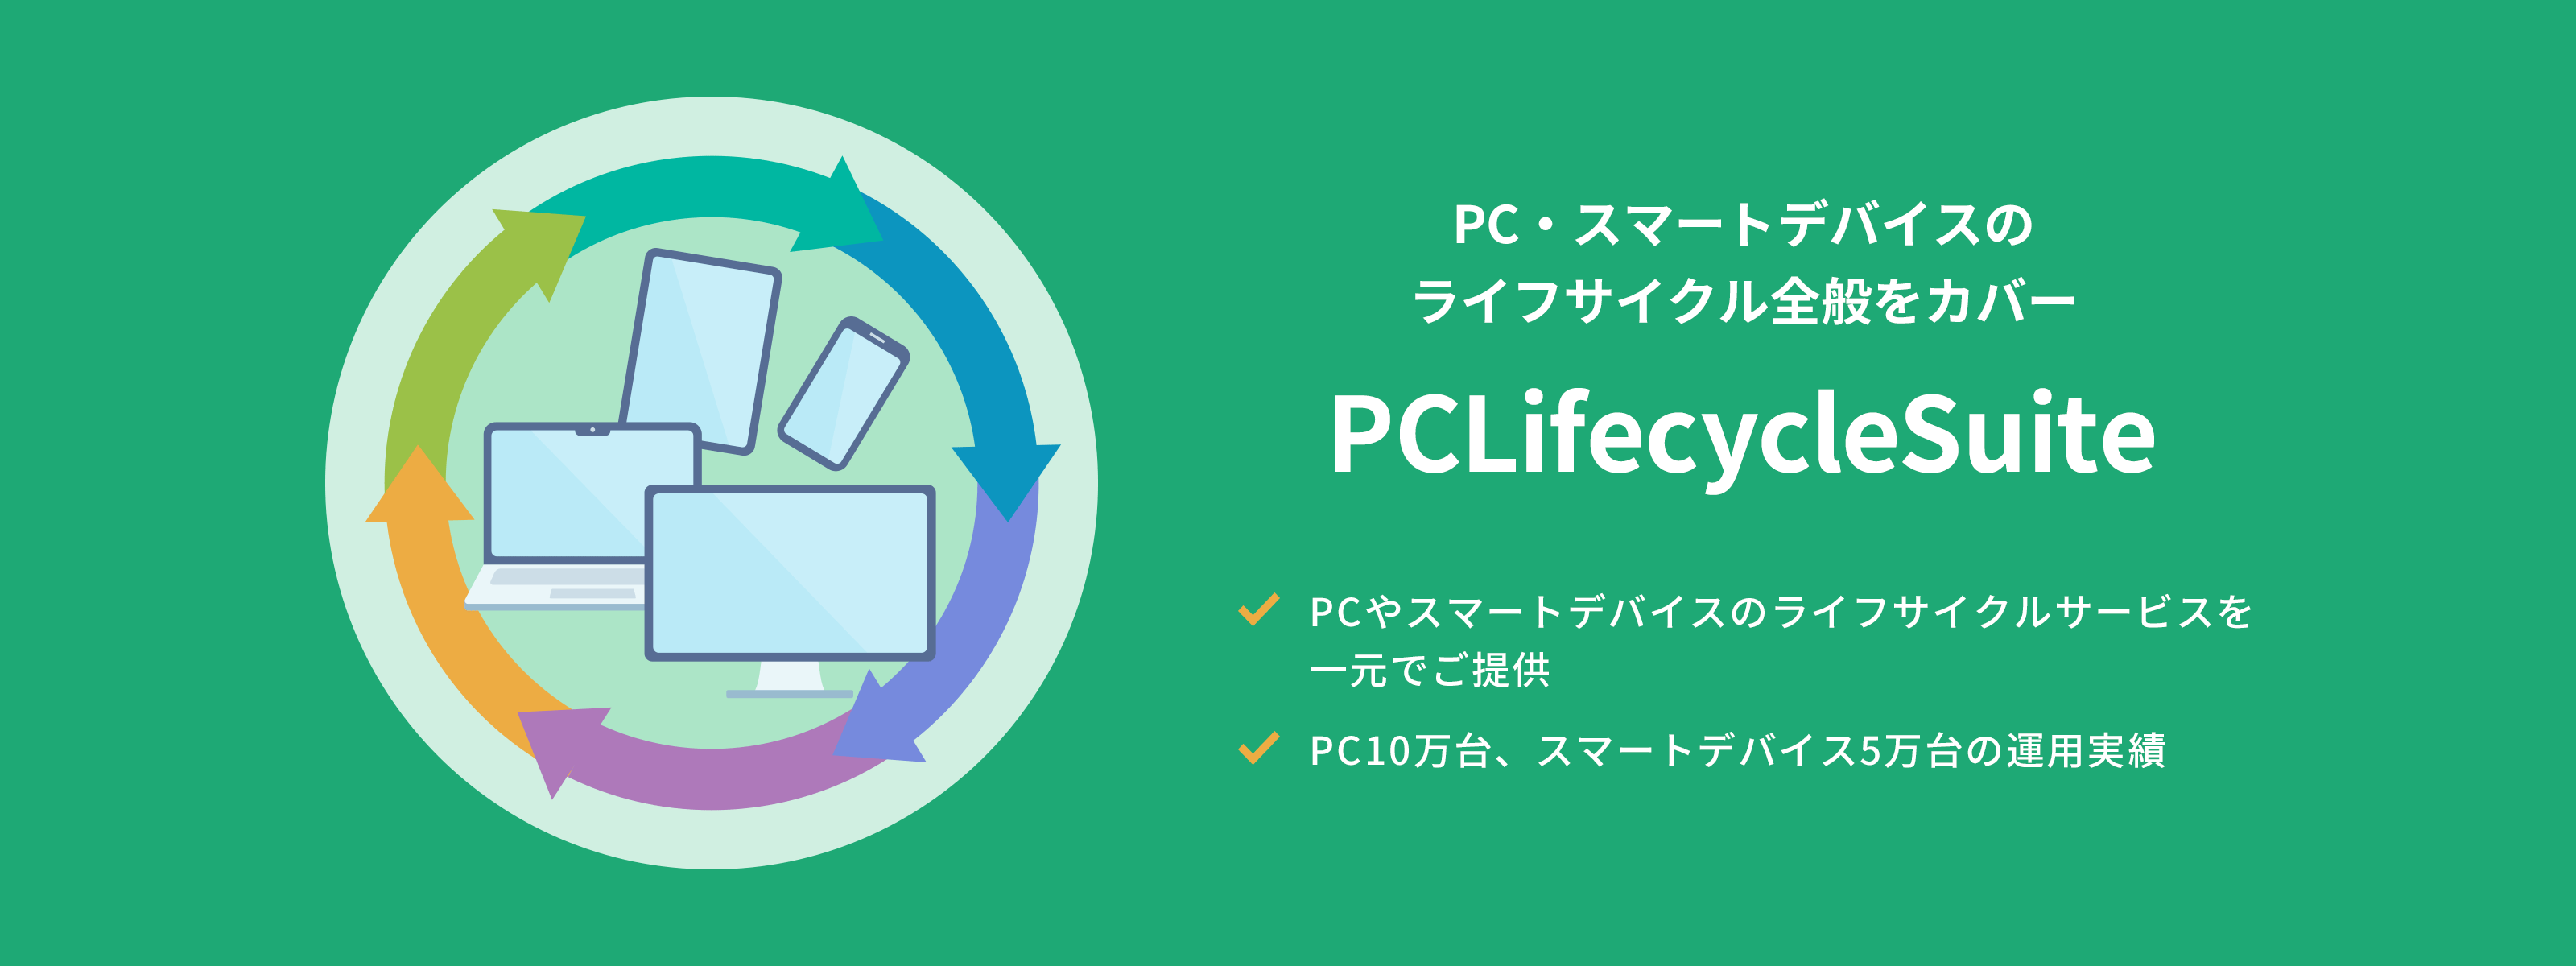 PC・スマードデバイスのライフサイクル全般をカバー　PCLifeCycleSuite PCやスマートデバイスのライフサイクルサービスを一元でご提供 PC10万台、スマートデバイス5万台の運用実績